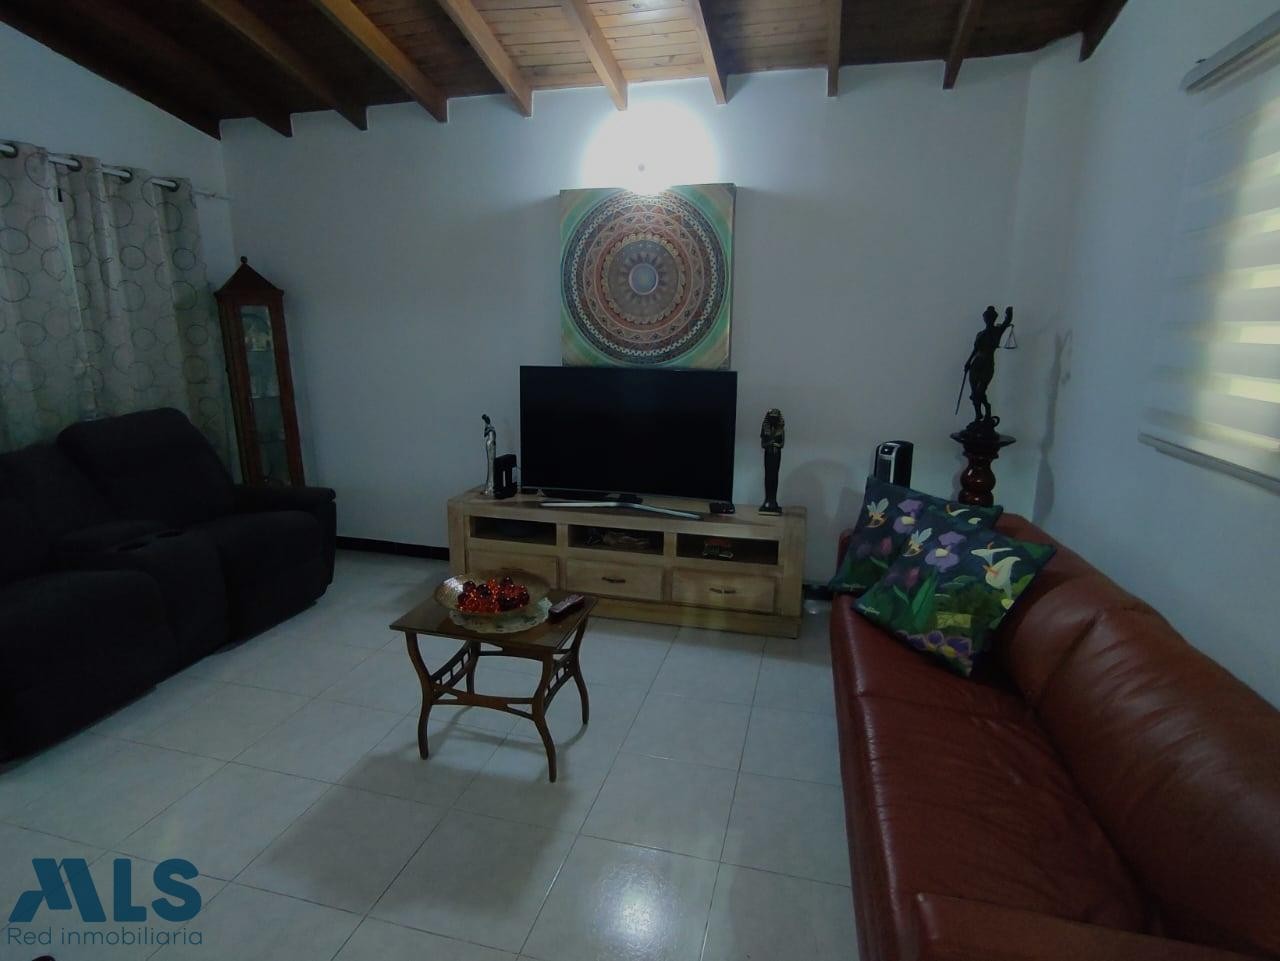 Venta de apartamento en Simón Bolívar Occidente de Medellín medellin - simon bolivar